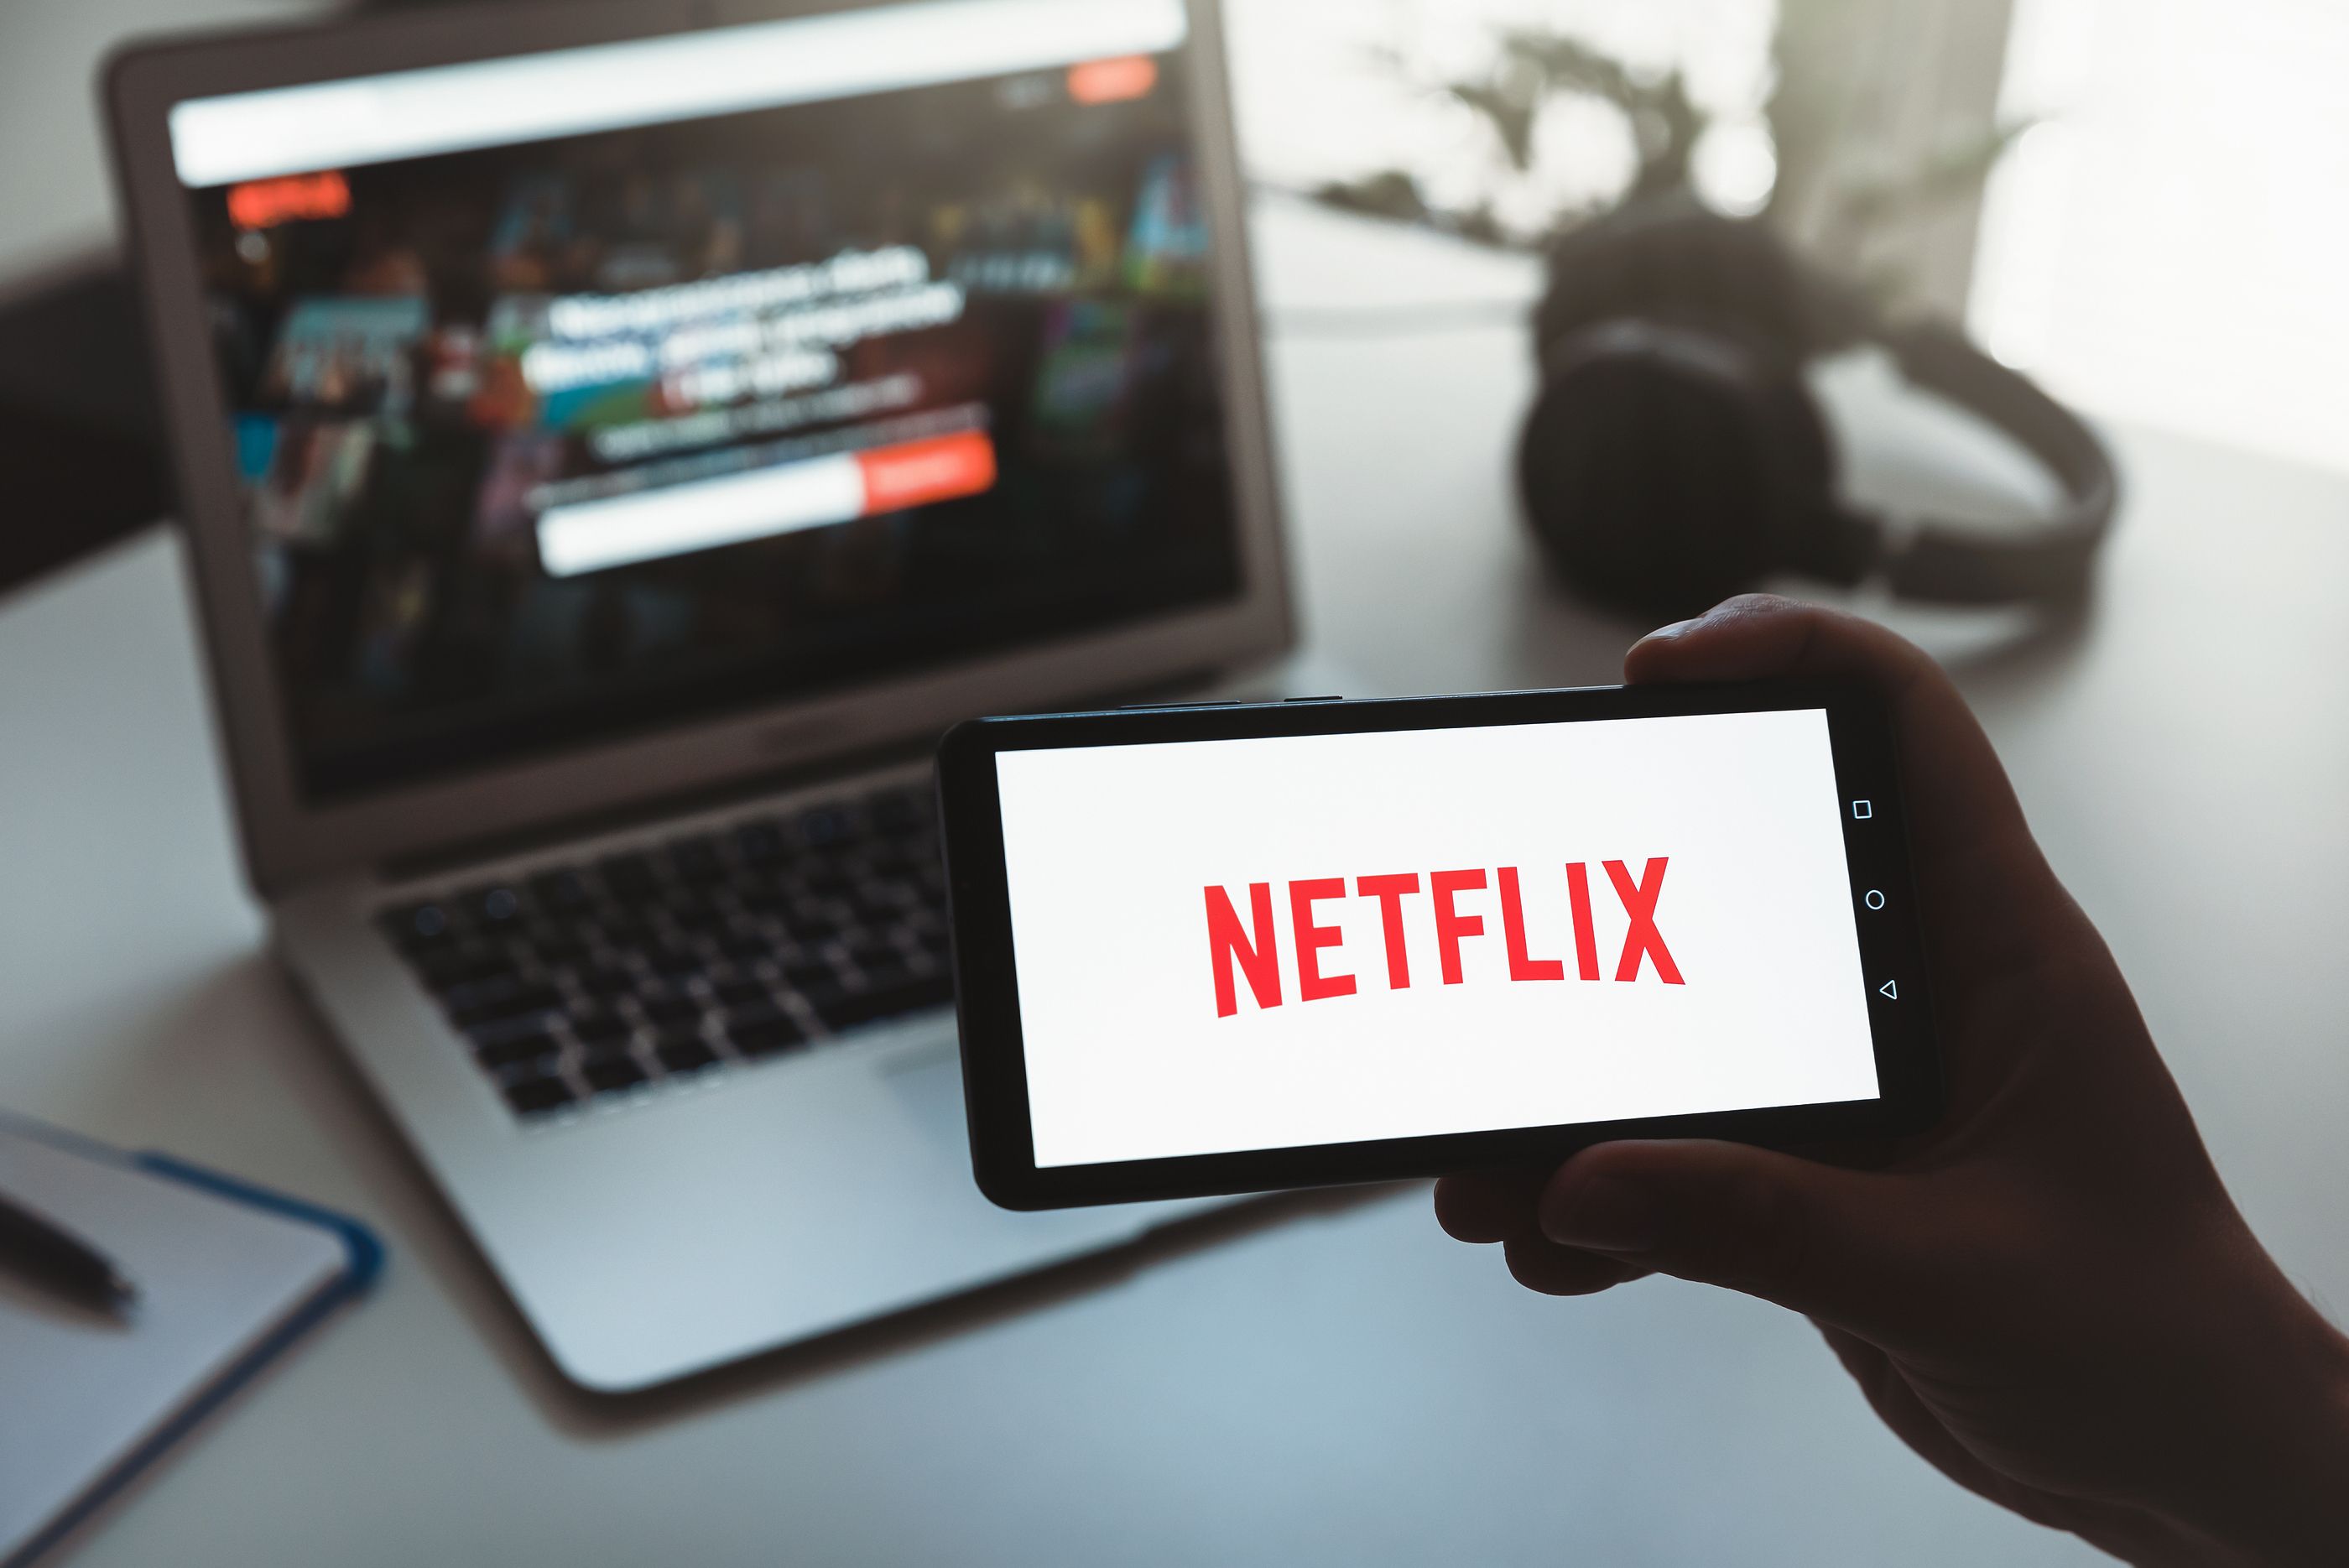 OCU denuncia a Netflix por "la manera engañosa" en que muestra sus ofertas de contratación. Foto: Bigstock